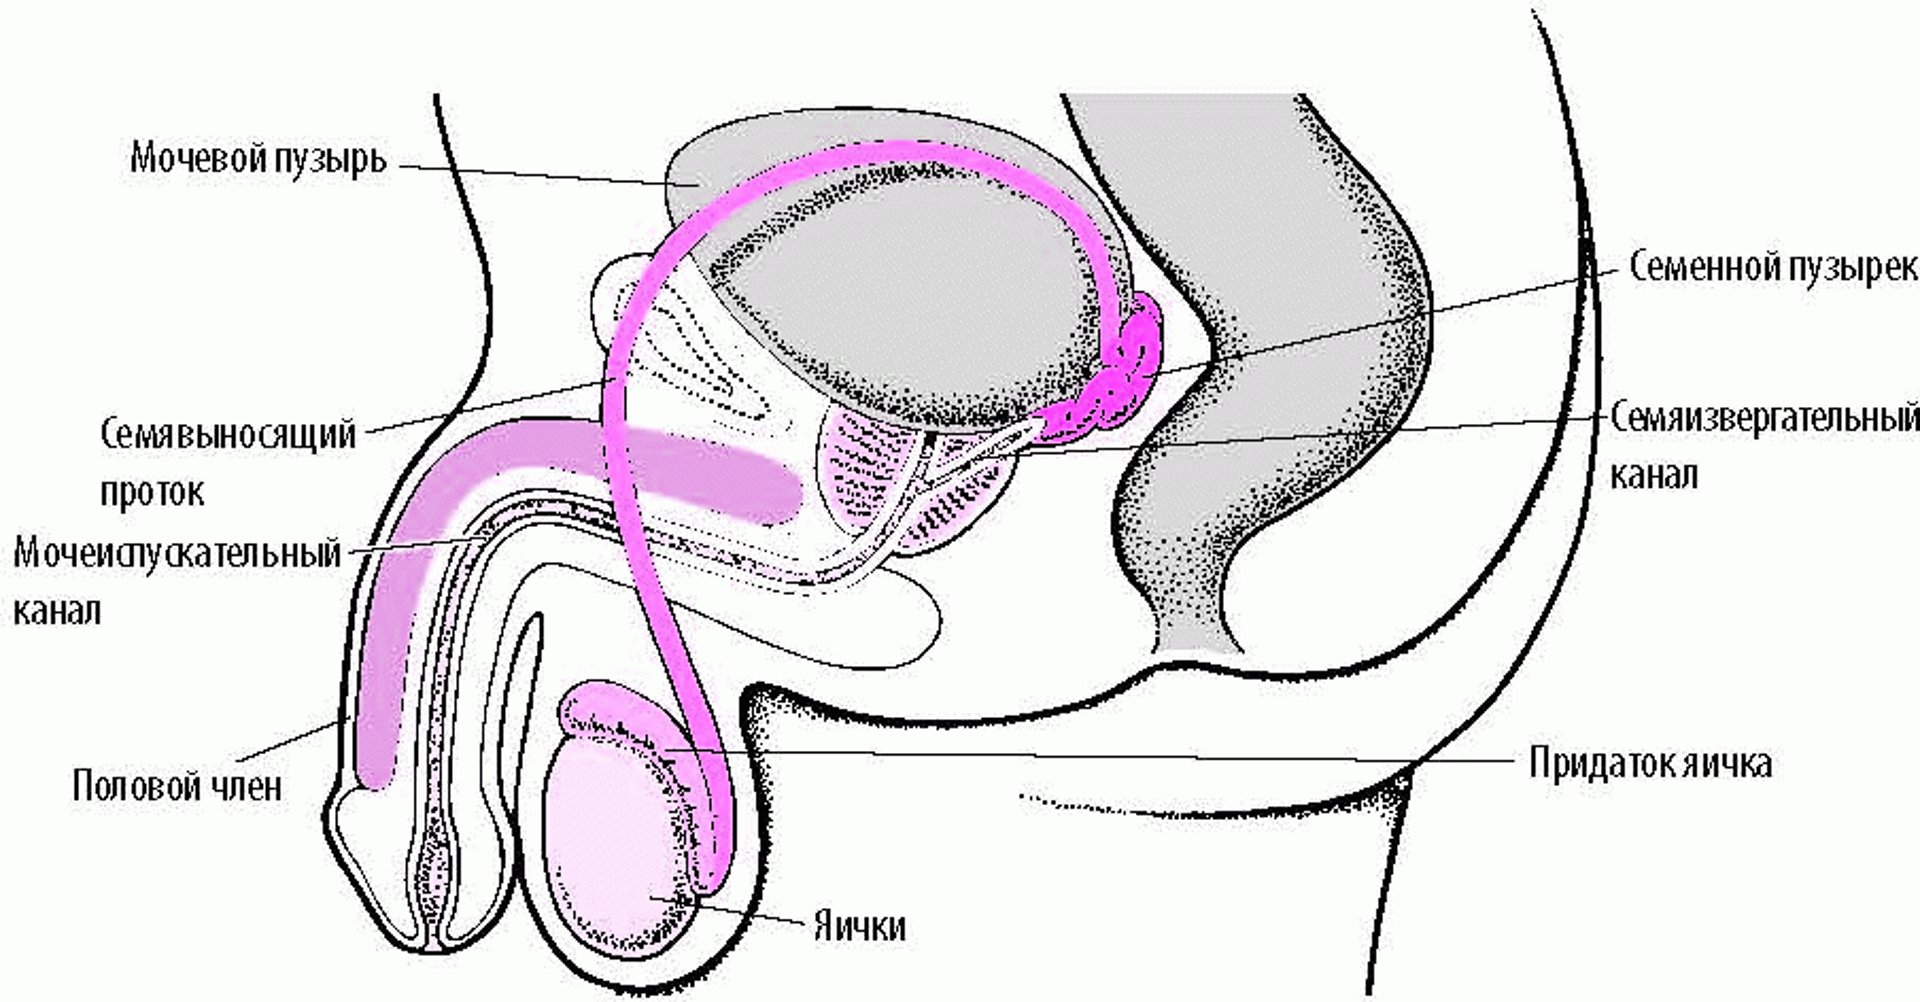 Расположение органов мужской репродуктивной системы